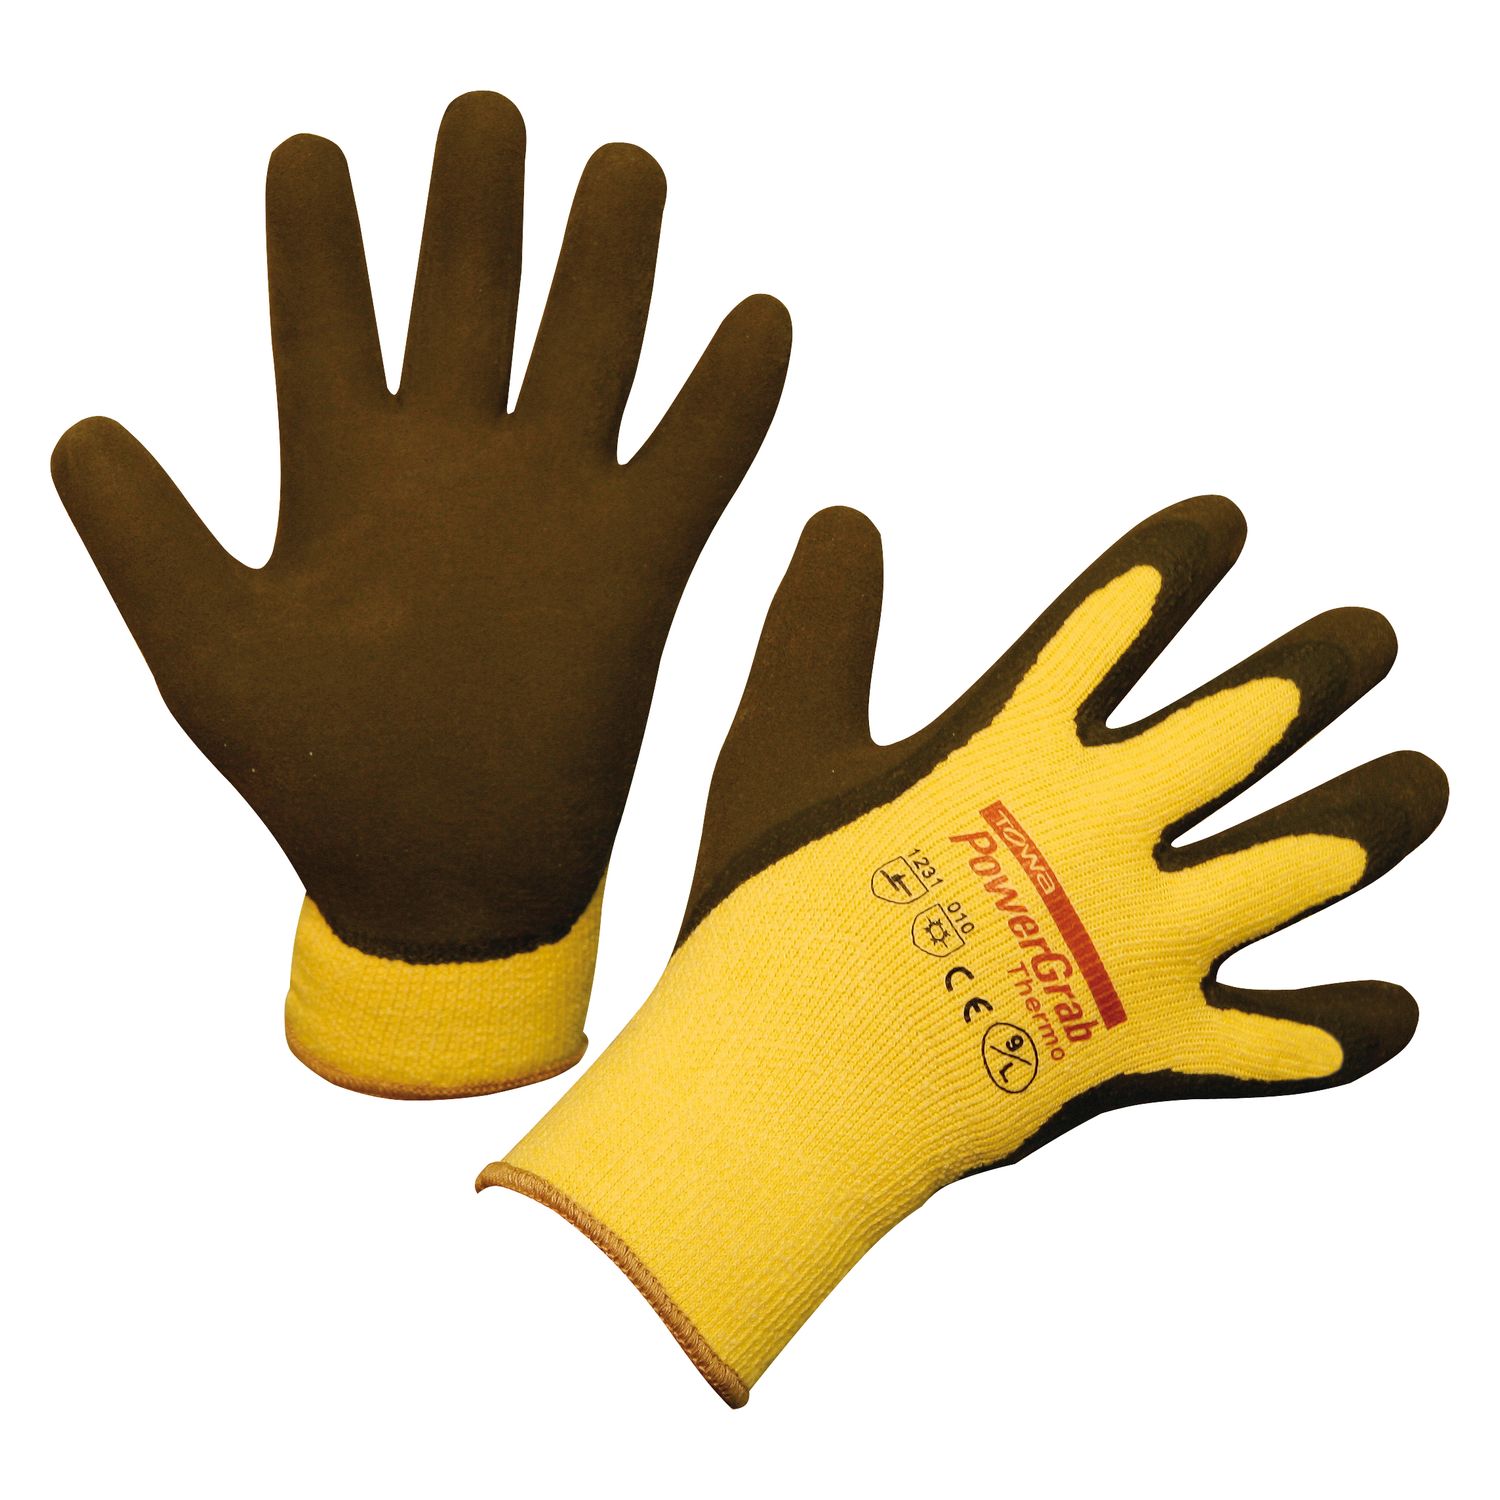 Kerbl Keron Qualitäts Handschuh Activ Grip Advance Größen 6-11 von Towa 